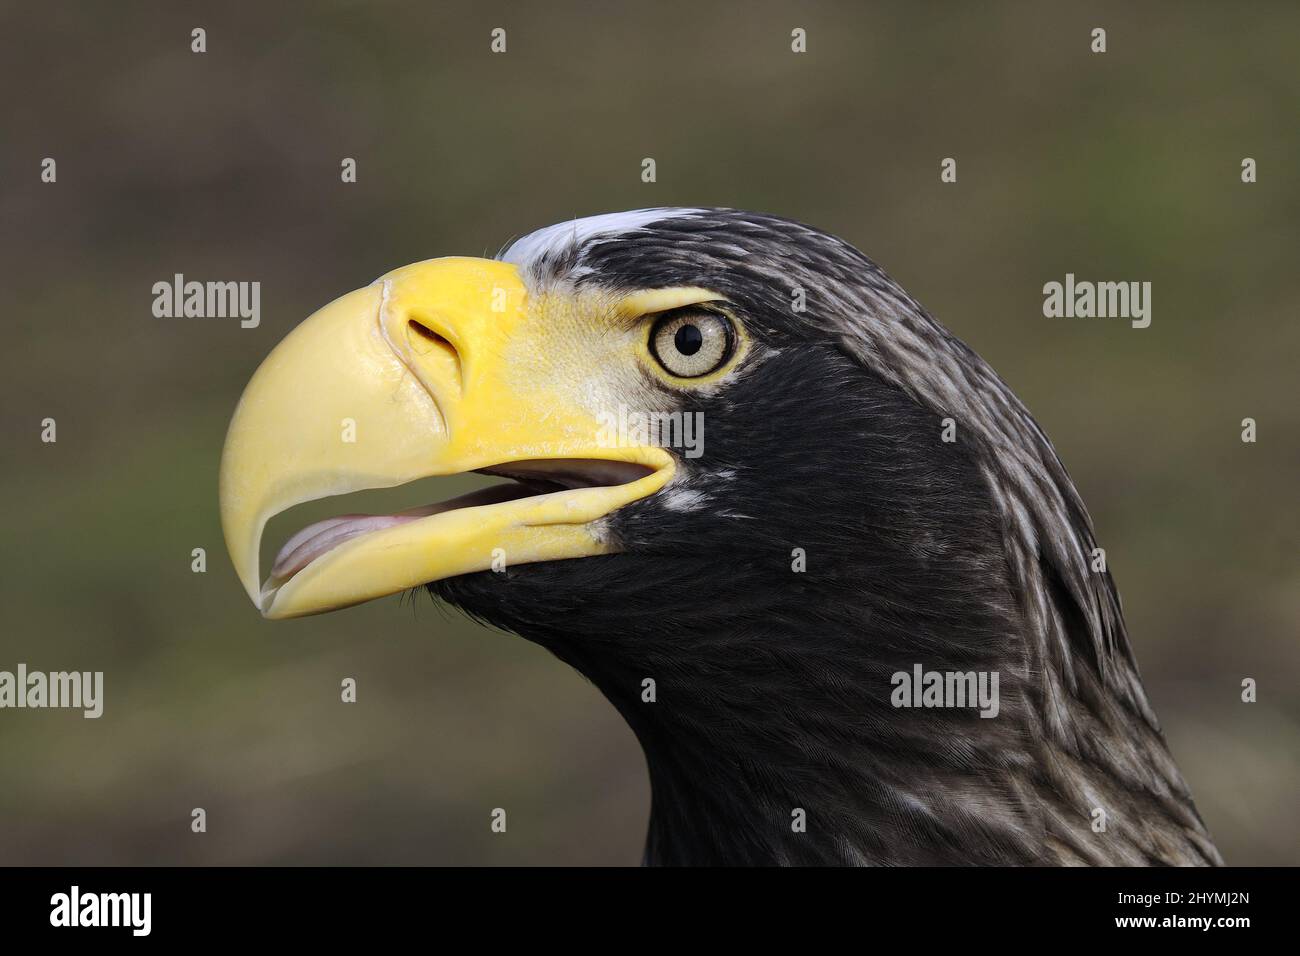 Stellers sea eagle (Haliaeetus pelagicus), portrait Stock Photo